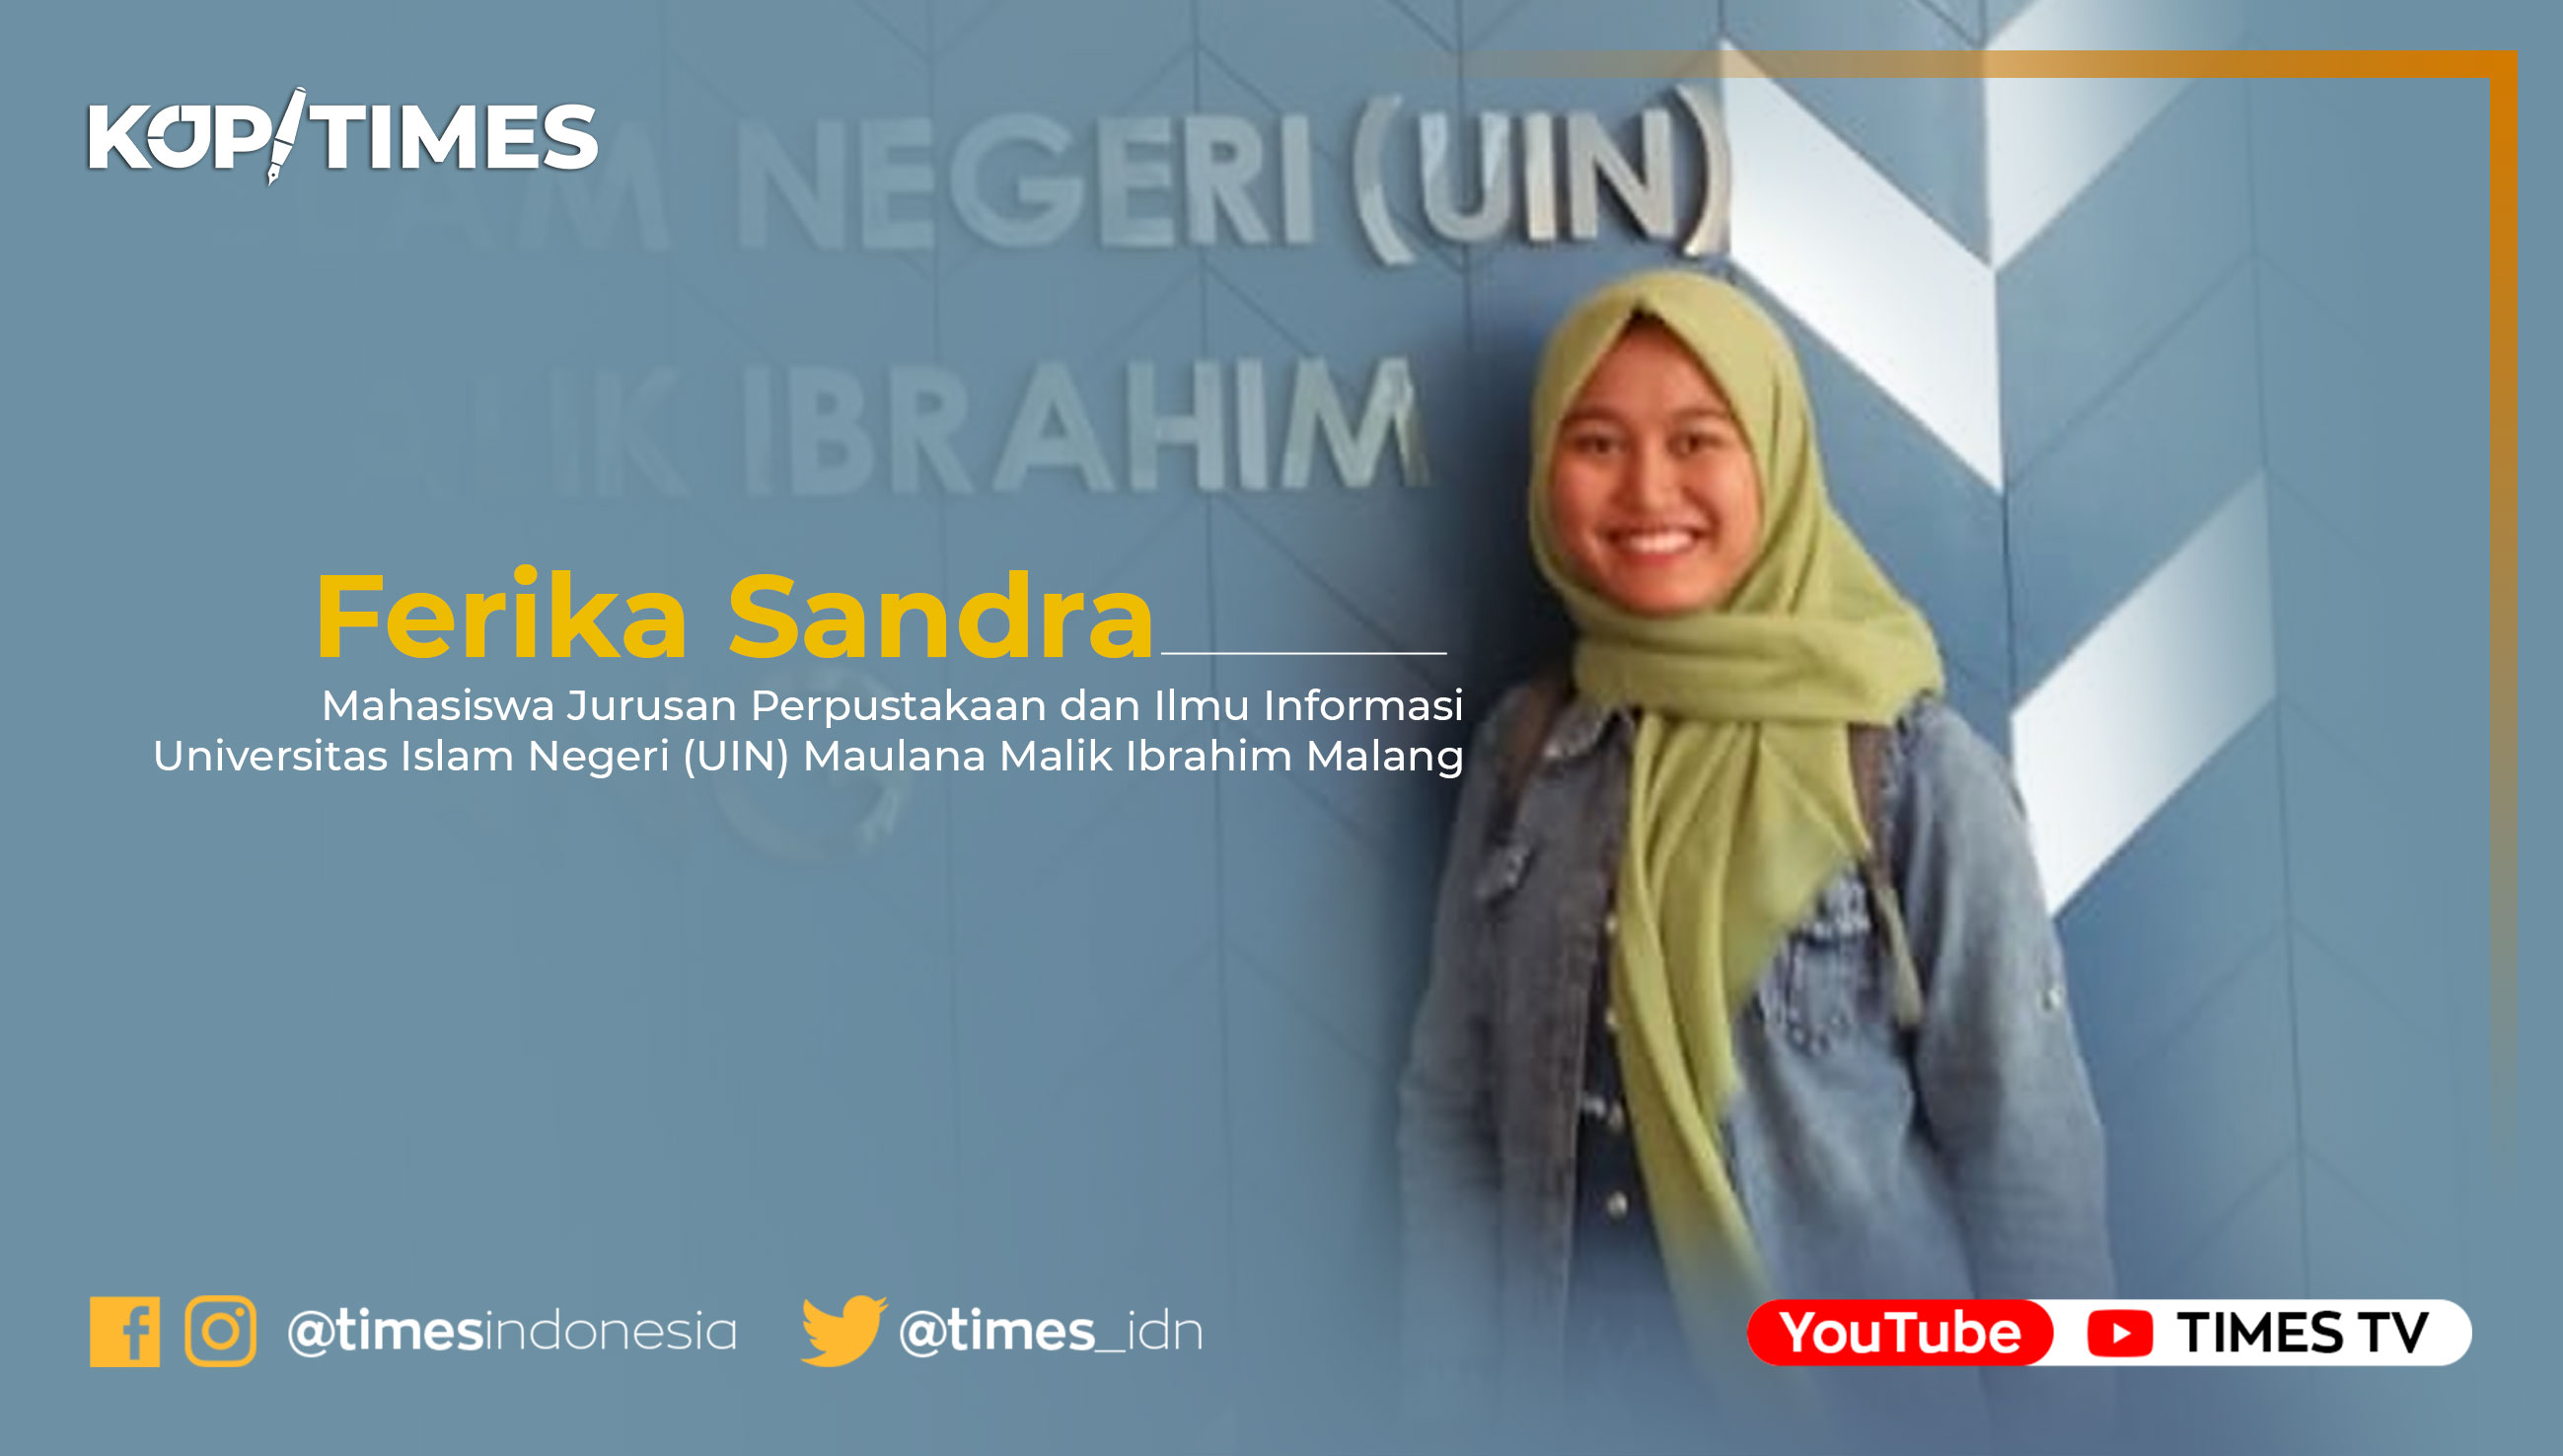 Ferika Sandra, Mahasiswa Jurusan Ilmu Perpustakaan dan Informasi Universitas Islam Negeri (UIN) Maulana Malik Ibrahim Malang Malang.